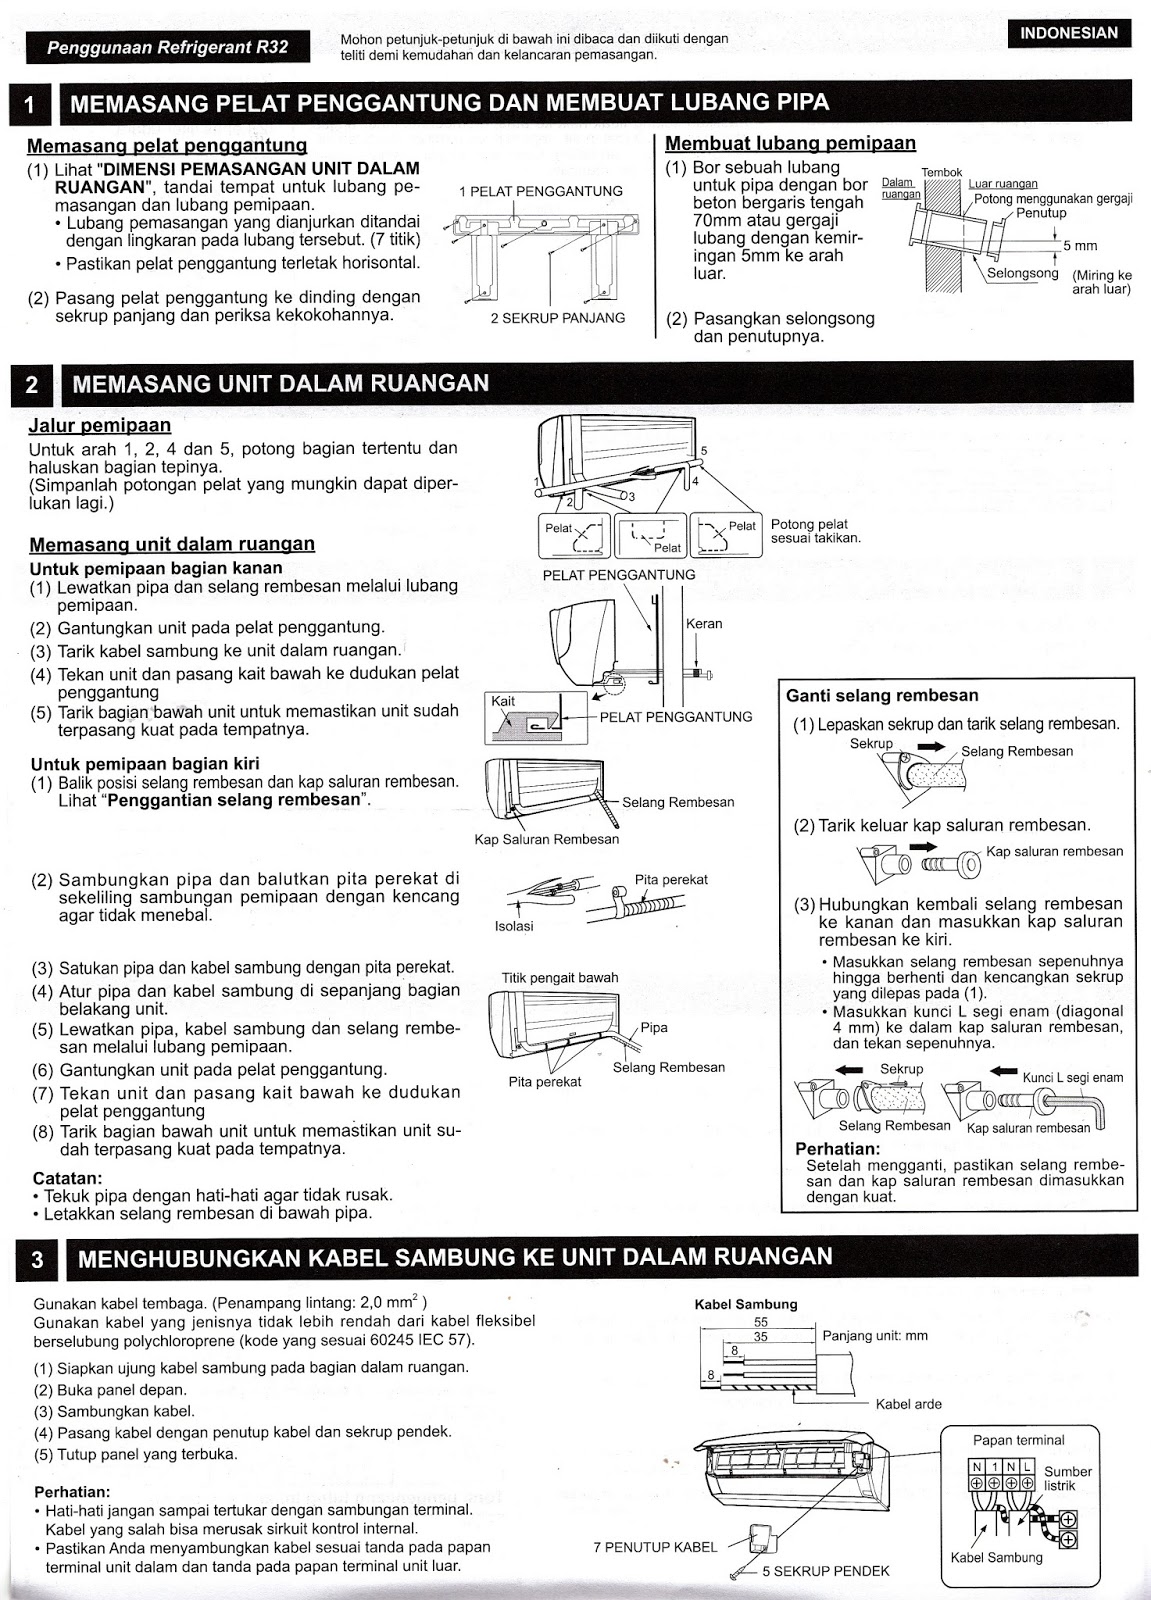 Manual Book : Petunjuk Penggunaan AC Sharp AH-A5SEY - Mambo Djumbo